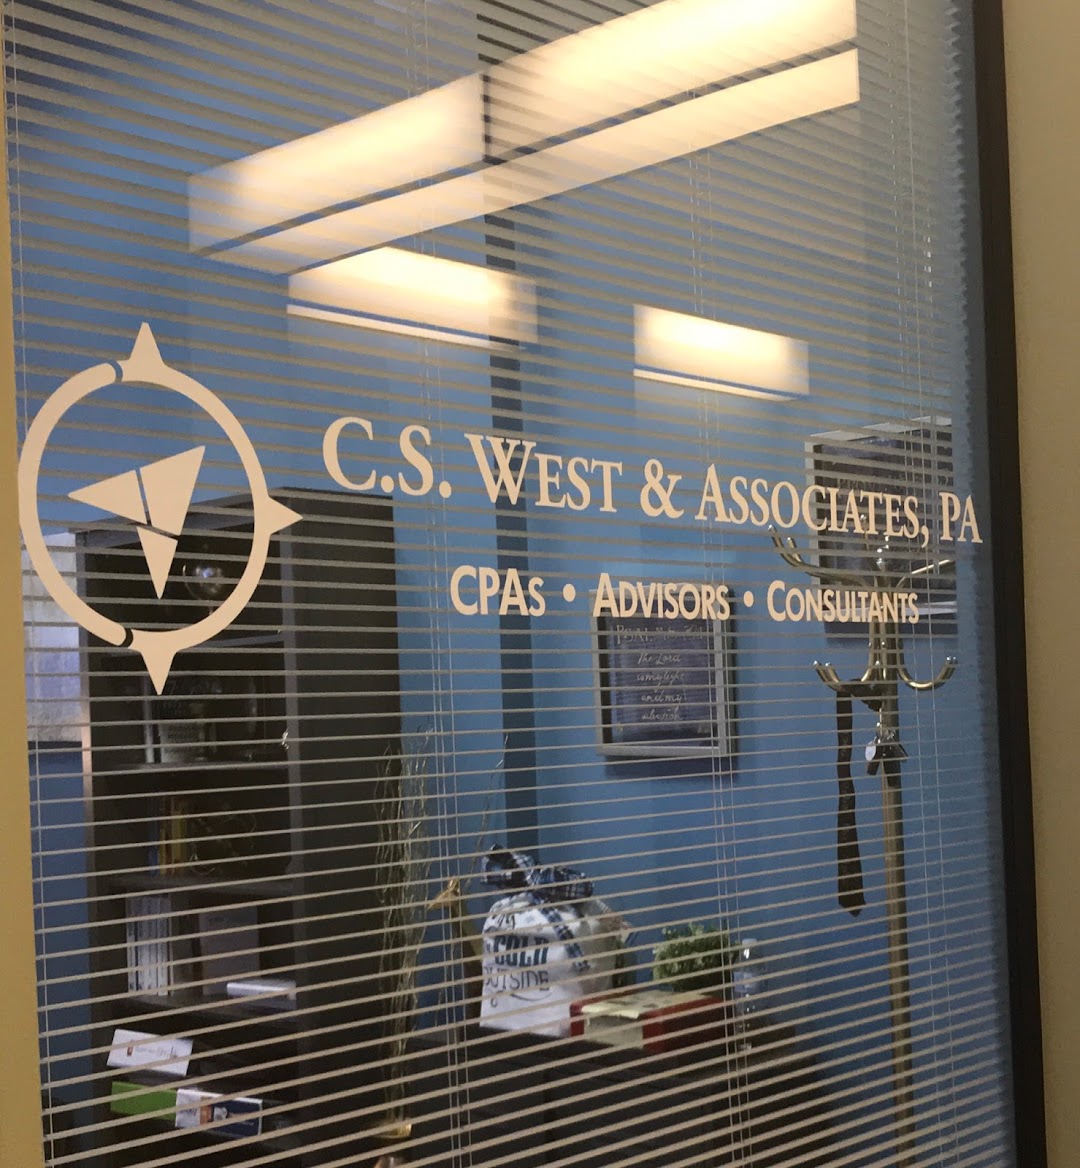 C. S. West & Associates, P.A